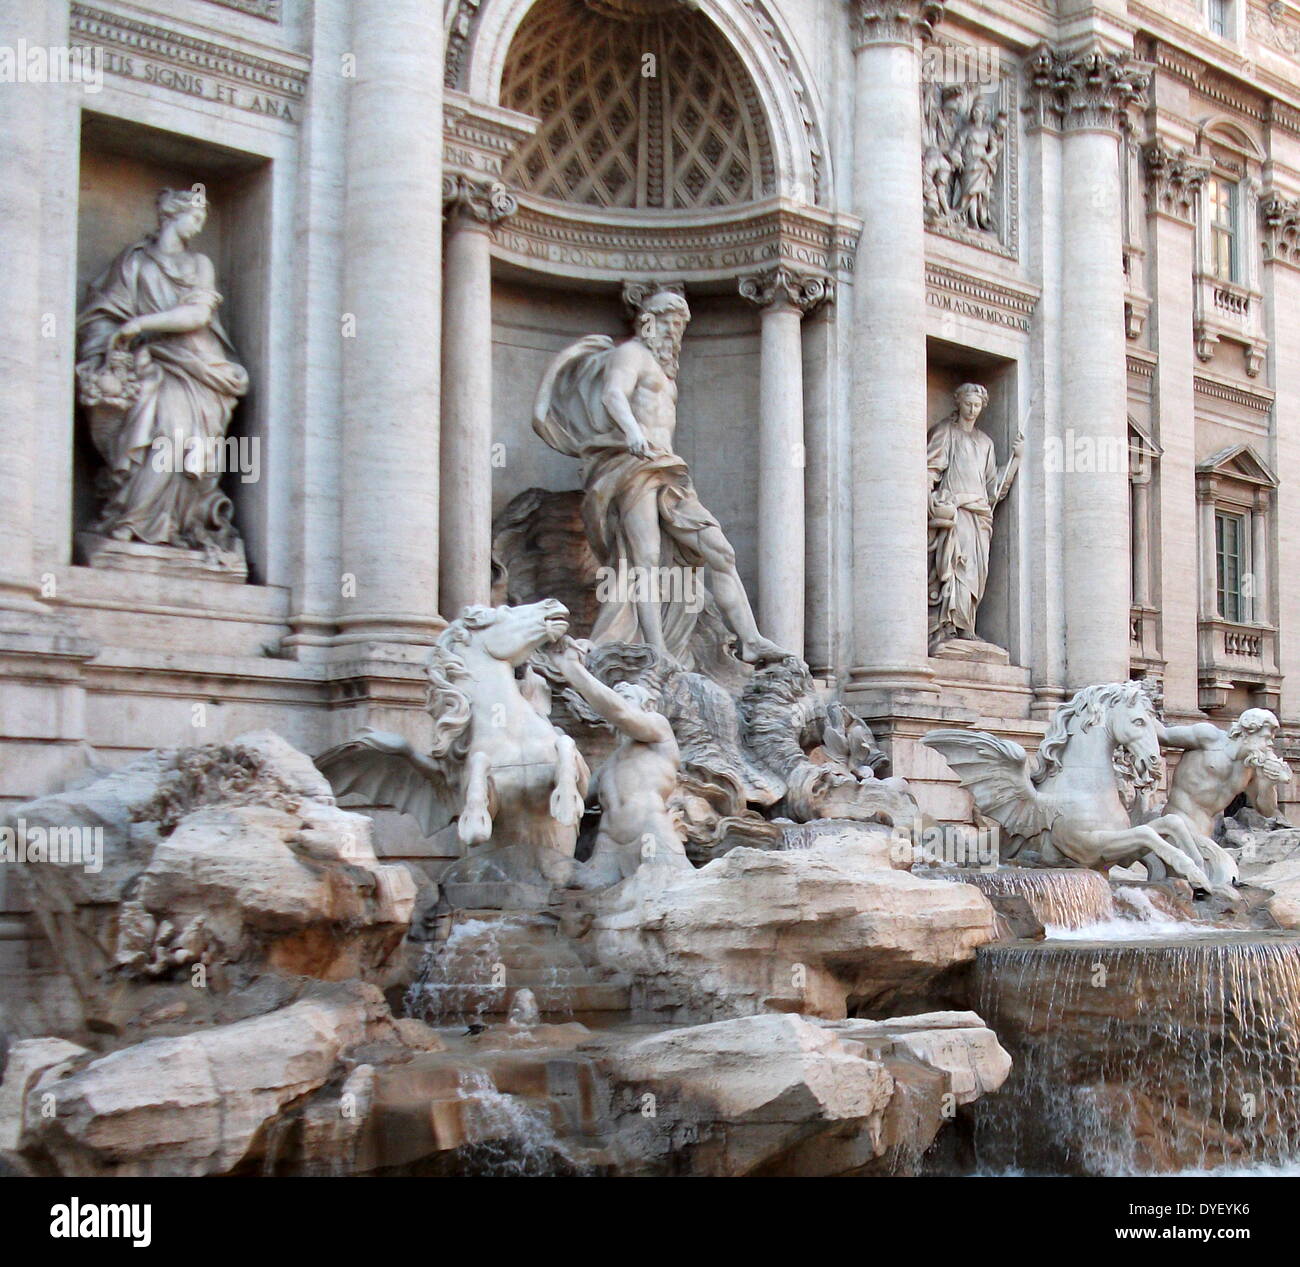 La fontaine de Trevi, situé à Rome, Italie. Entre 1732-1762 AD. Conçu par Nicola Salvi, et achevé par Giuseppe Pannini. C'est la plus grande fontaine baroque à Rome et l'une des plus célèbres fontaines dans le monde entier. Banque D'Images